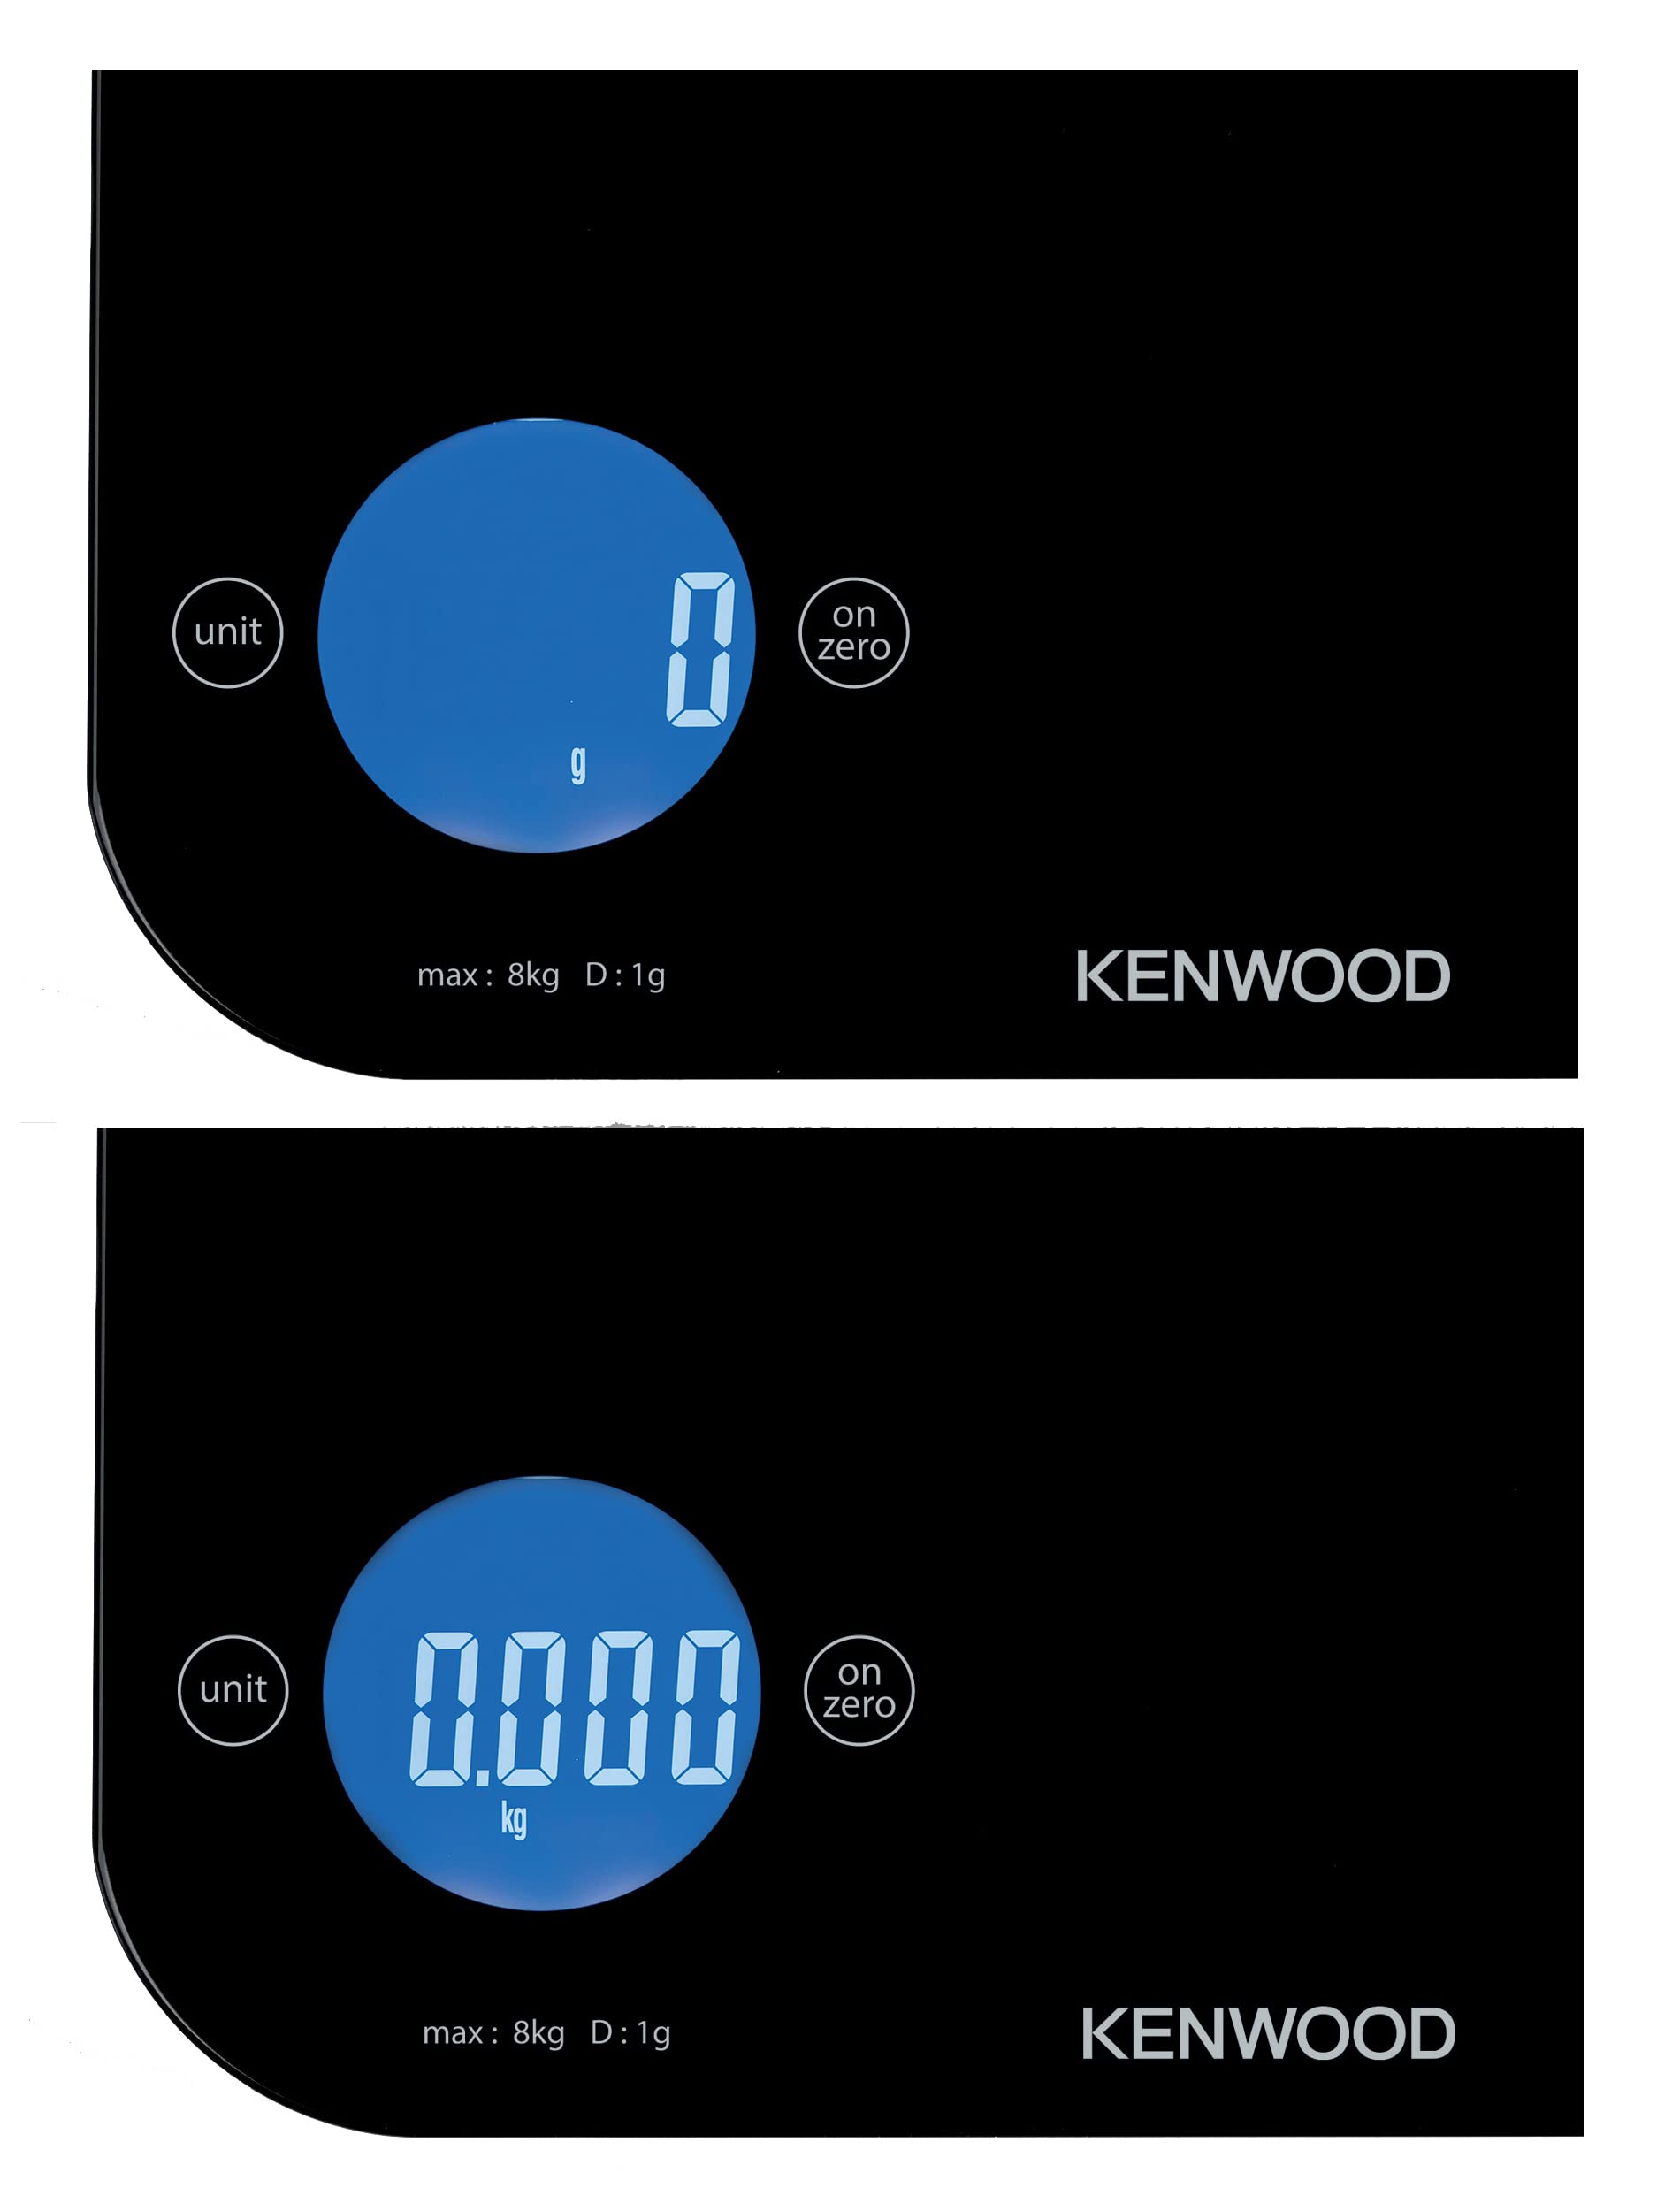  Kenwood wep50 digital scale 